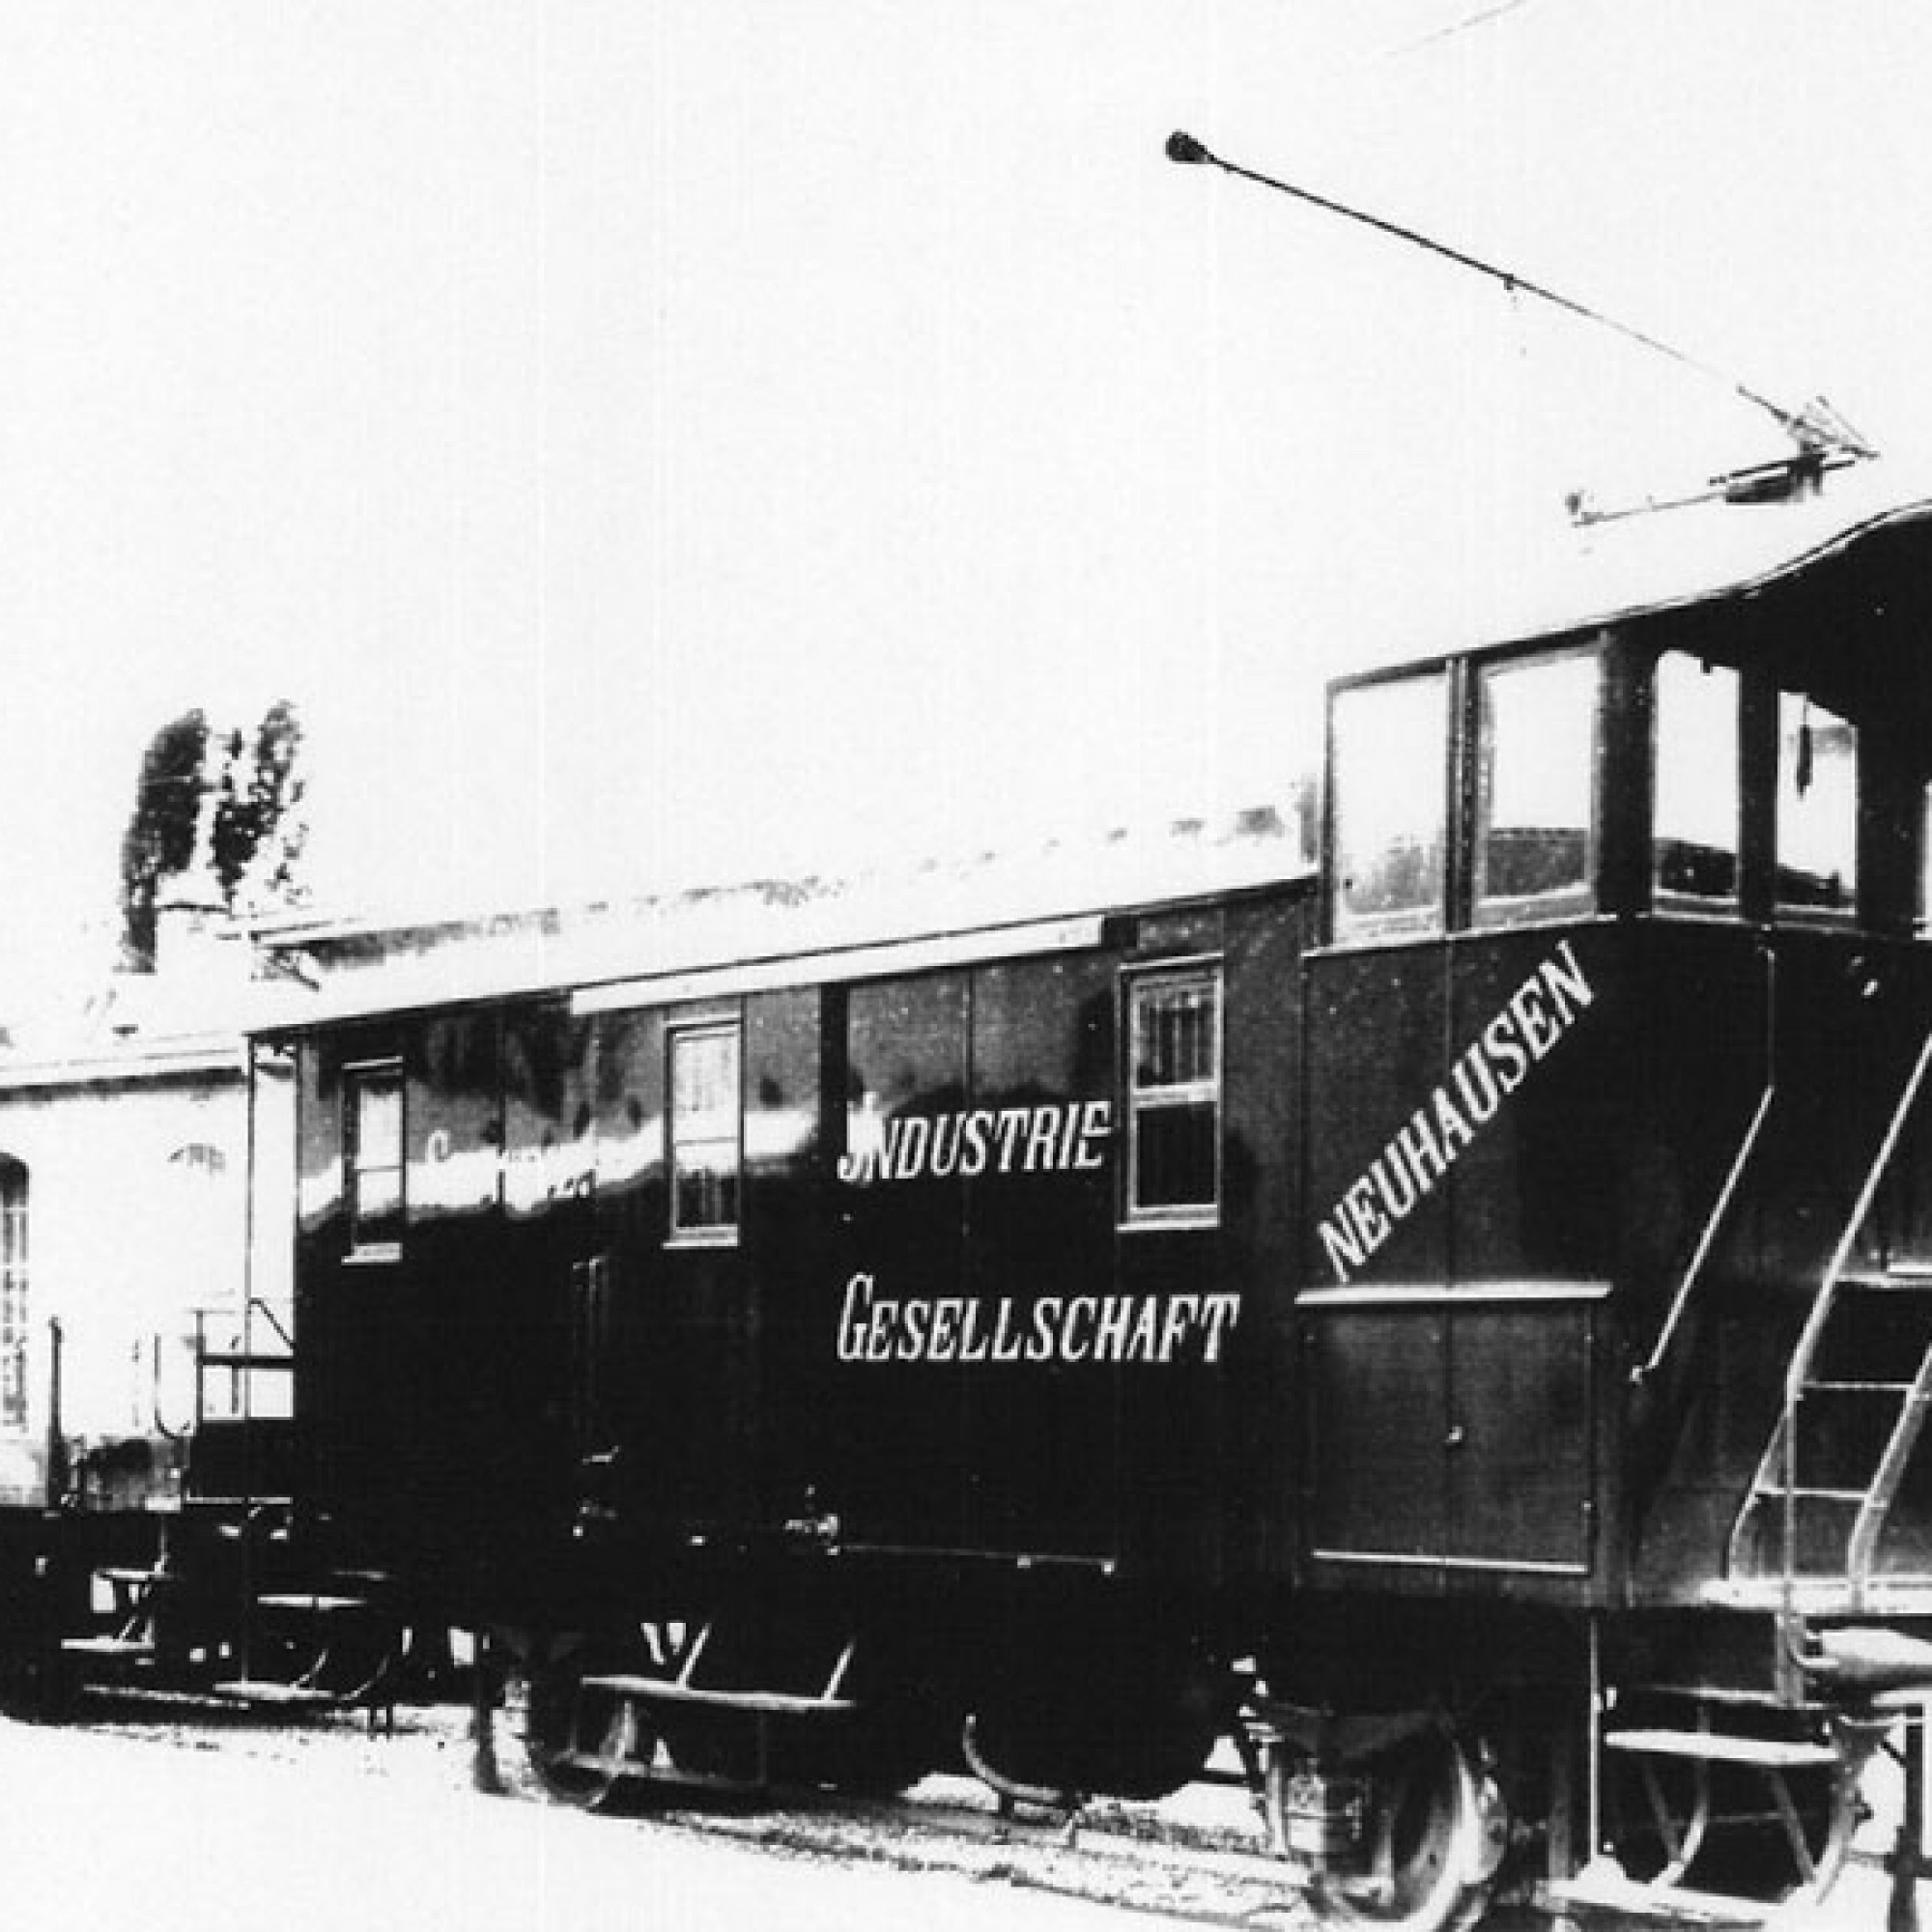 SIG railroad wagon marked "schweizerische industrie gesellschaft"